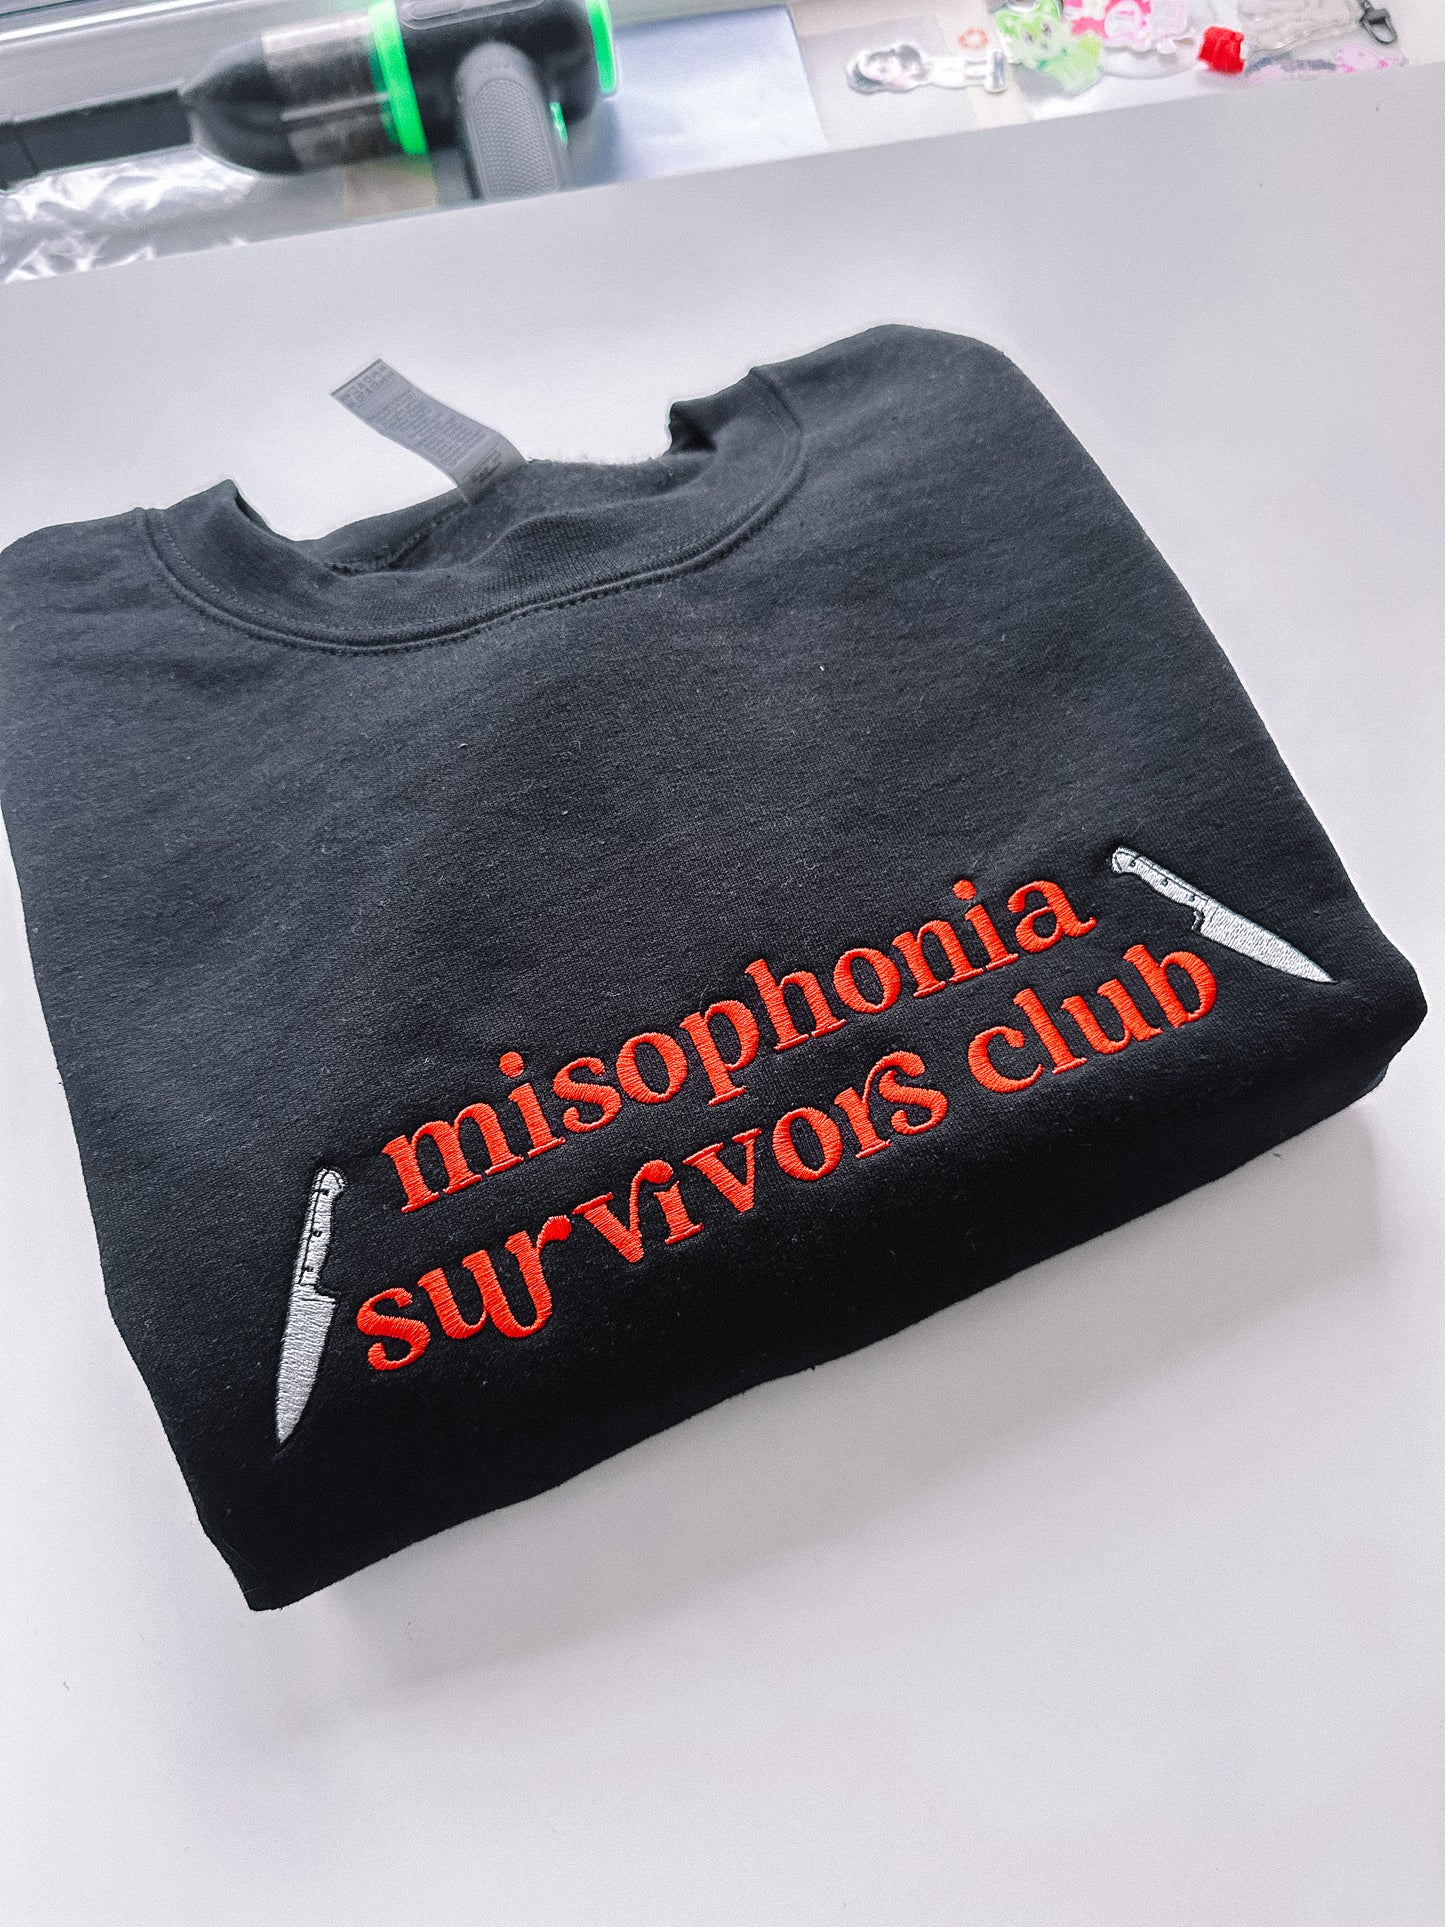 Misophonia Survivor's Club crewneck